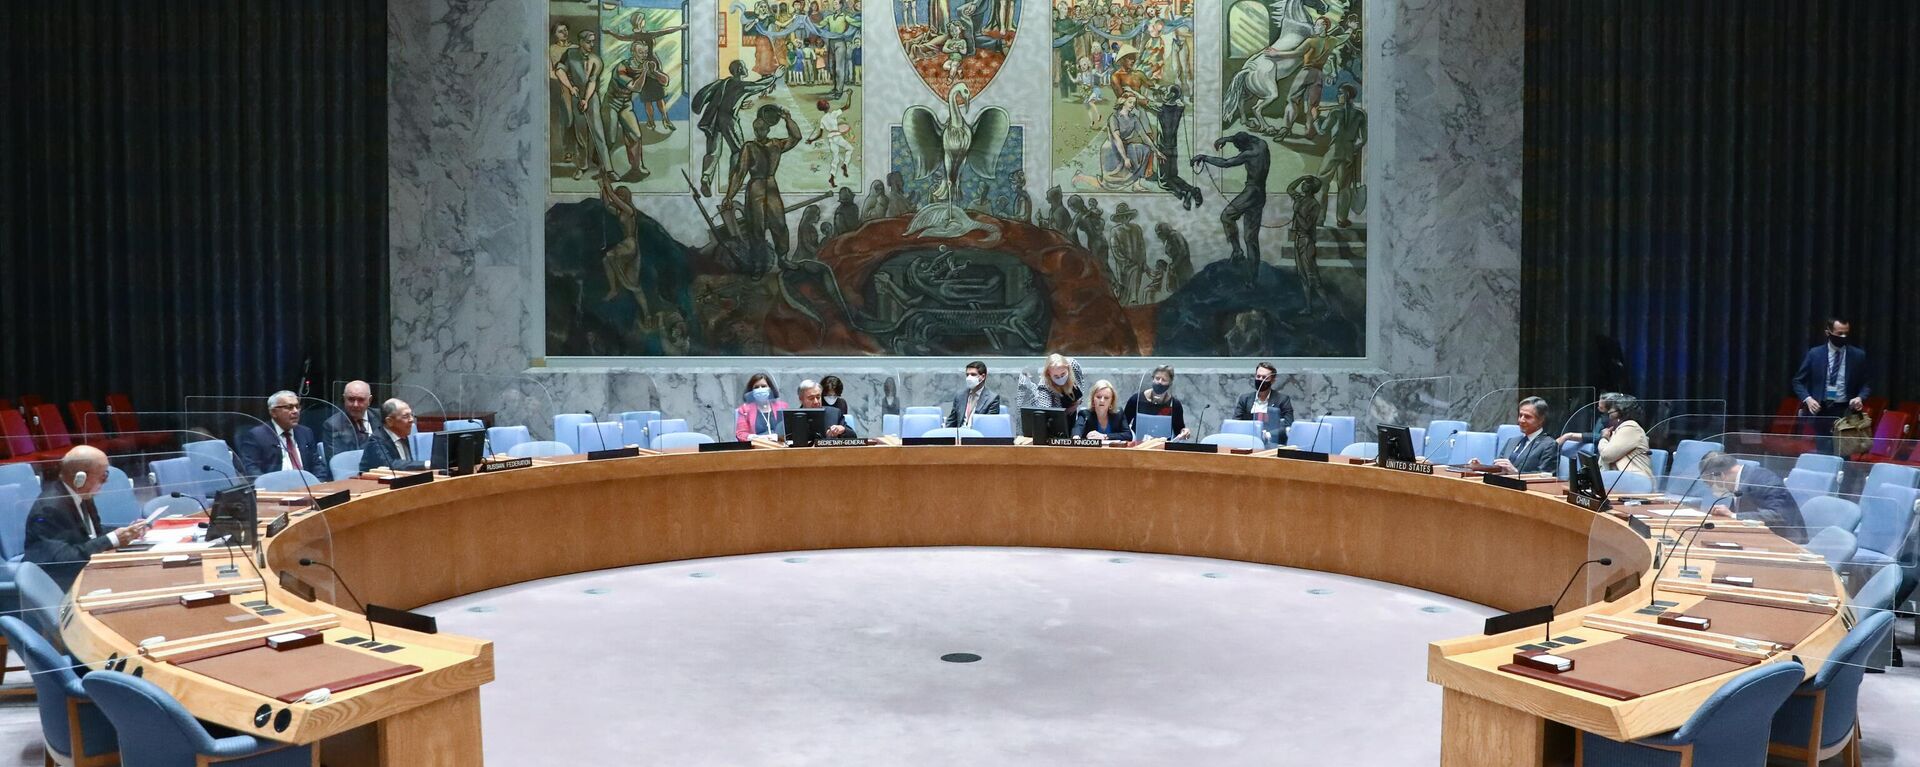 Встреча глав МИД пятерки постоянных членов Совета Безопасности ООН с генеральным секретарем Организации Объединенных Наций (ООН) Антониу Гутеррешем  - Sputnik Узбекистан, 1920, 21.10.2021